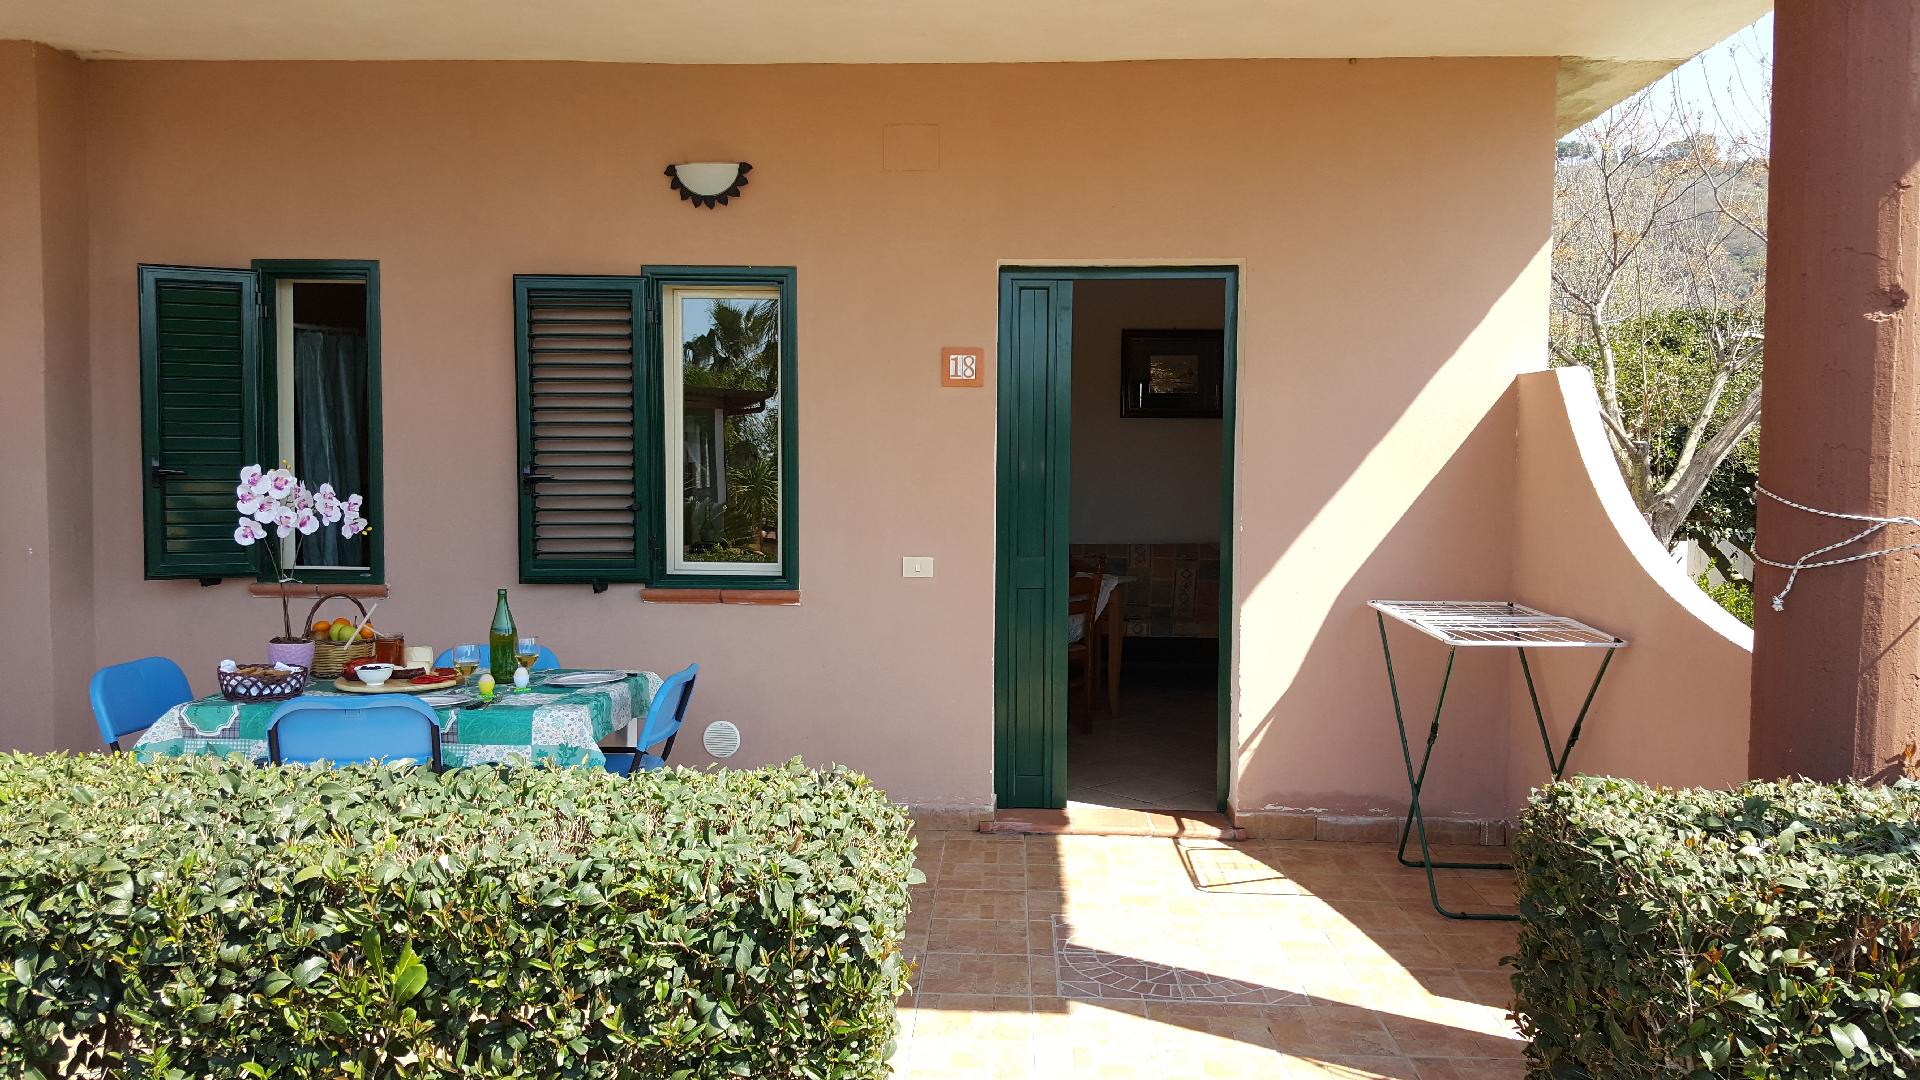 Ferienhaus für 4 Personen ca. 55 m² in S Bauernhof in Italien